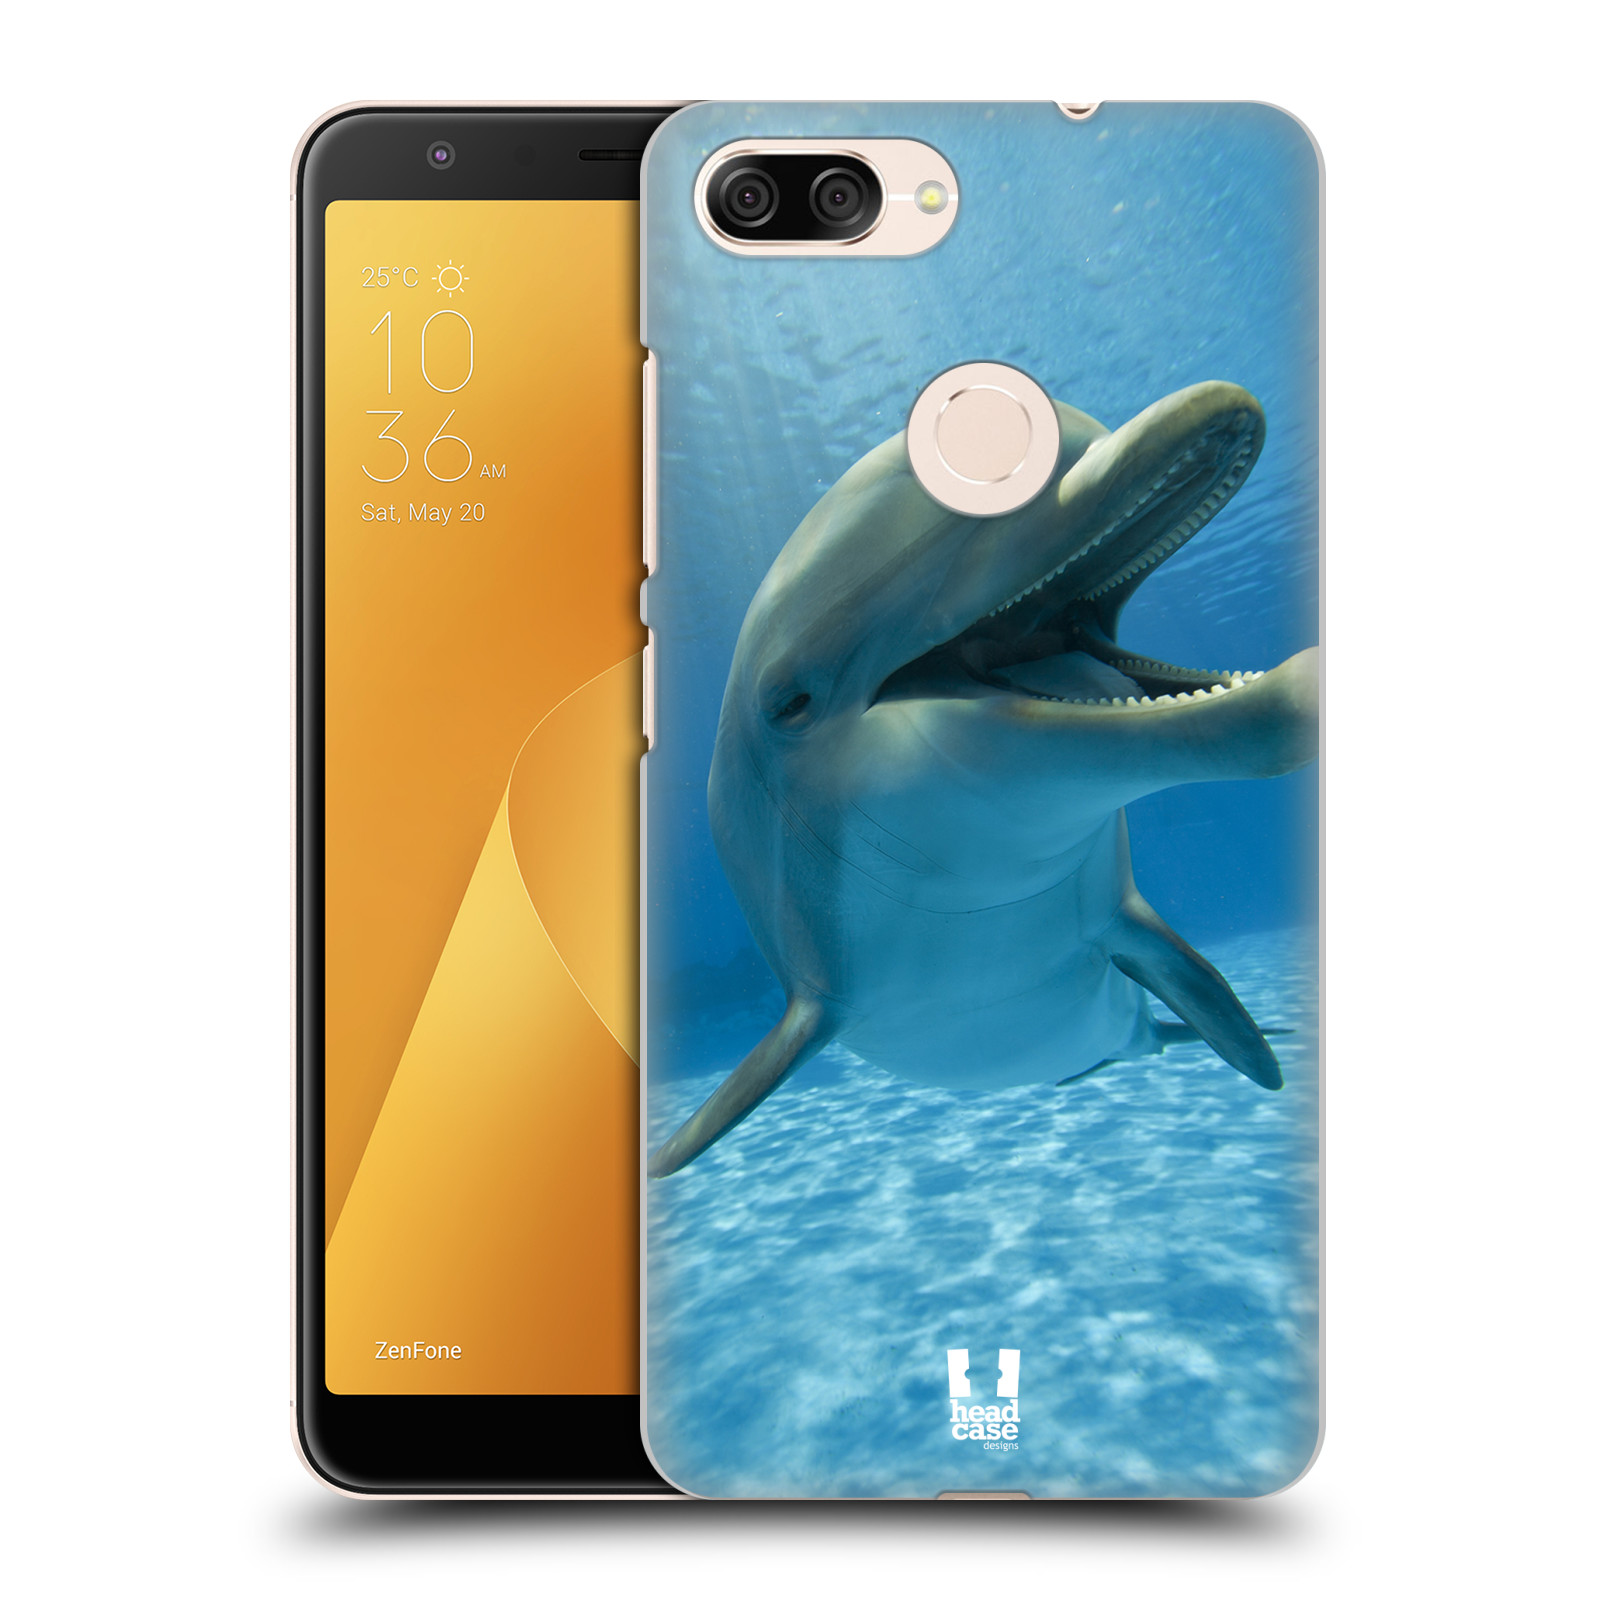 Zadní obal pro mobil Asus Zenfone Max Plus (M1) - HEAD CASE - Svět zvířat delfín v moři